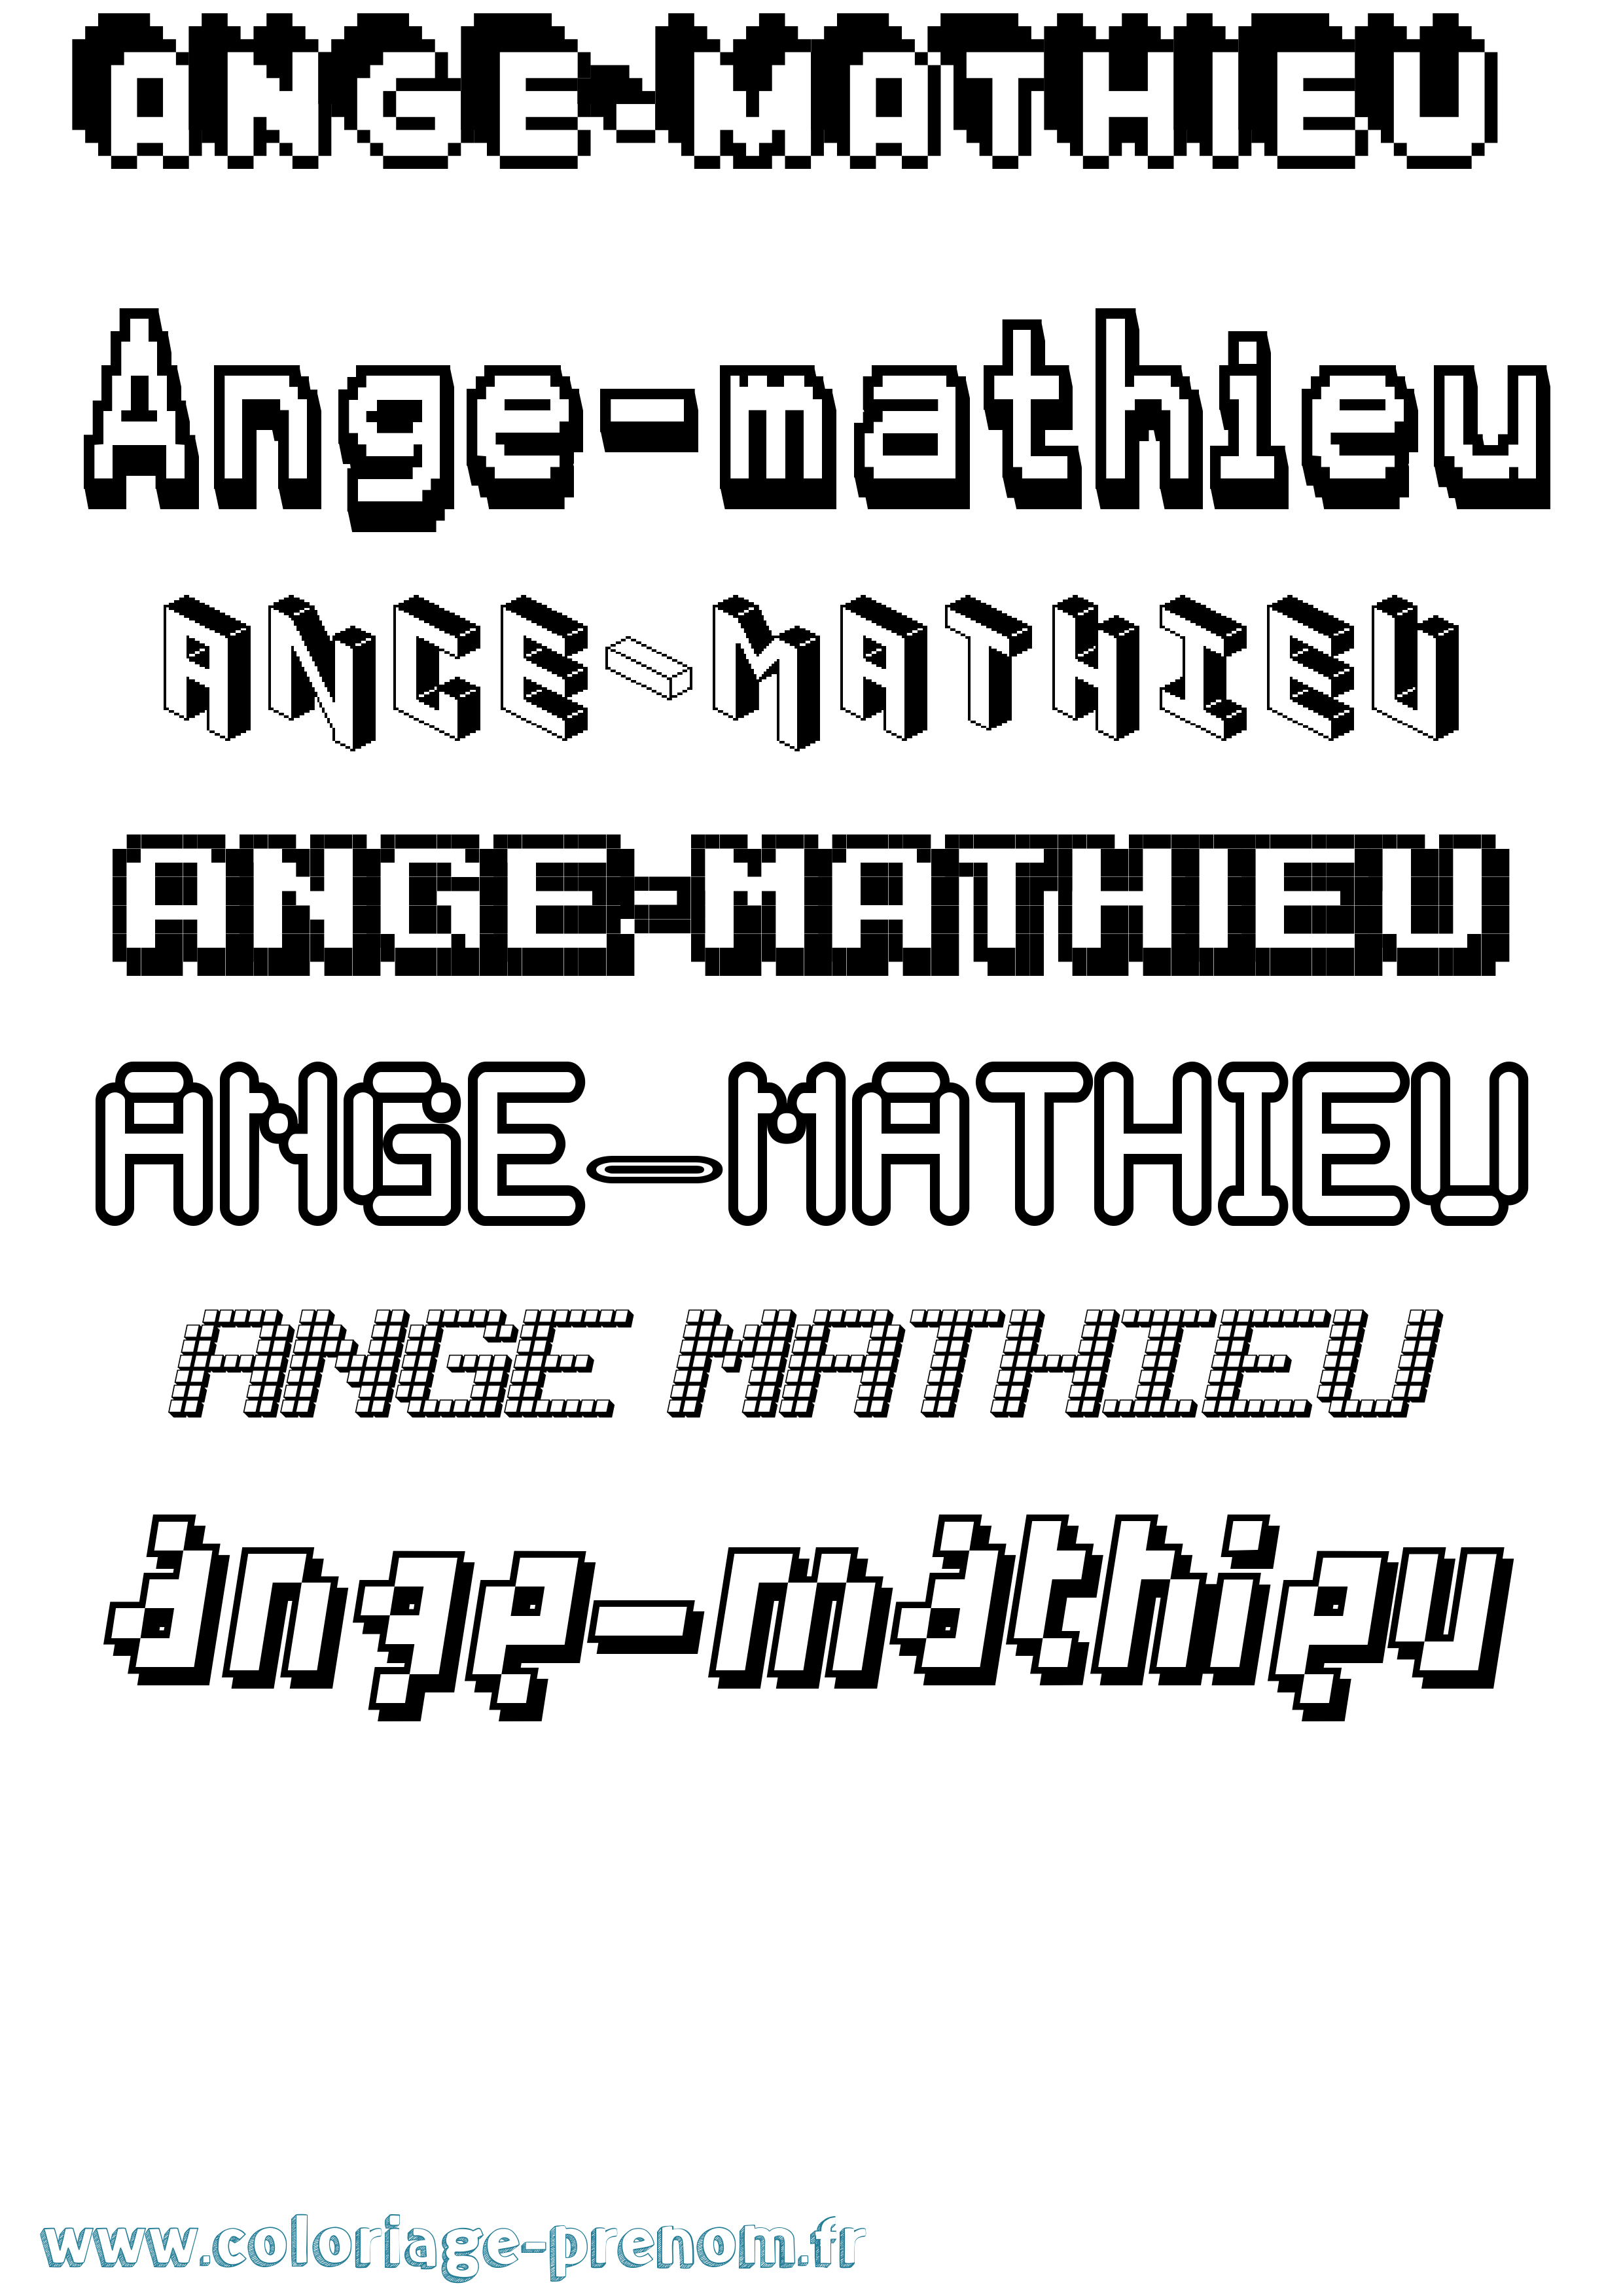 Coloriage prénom Ange-Mathieu Pixel